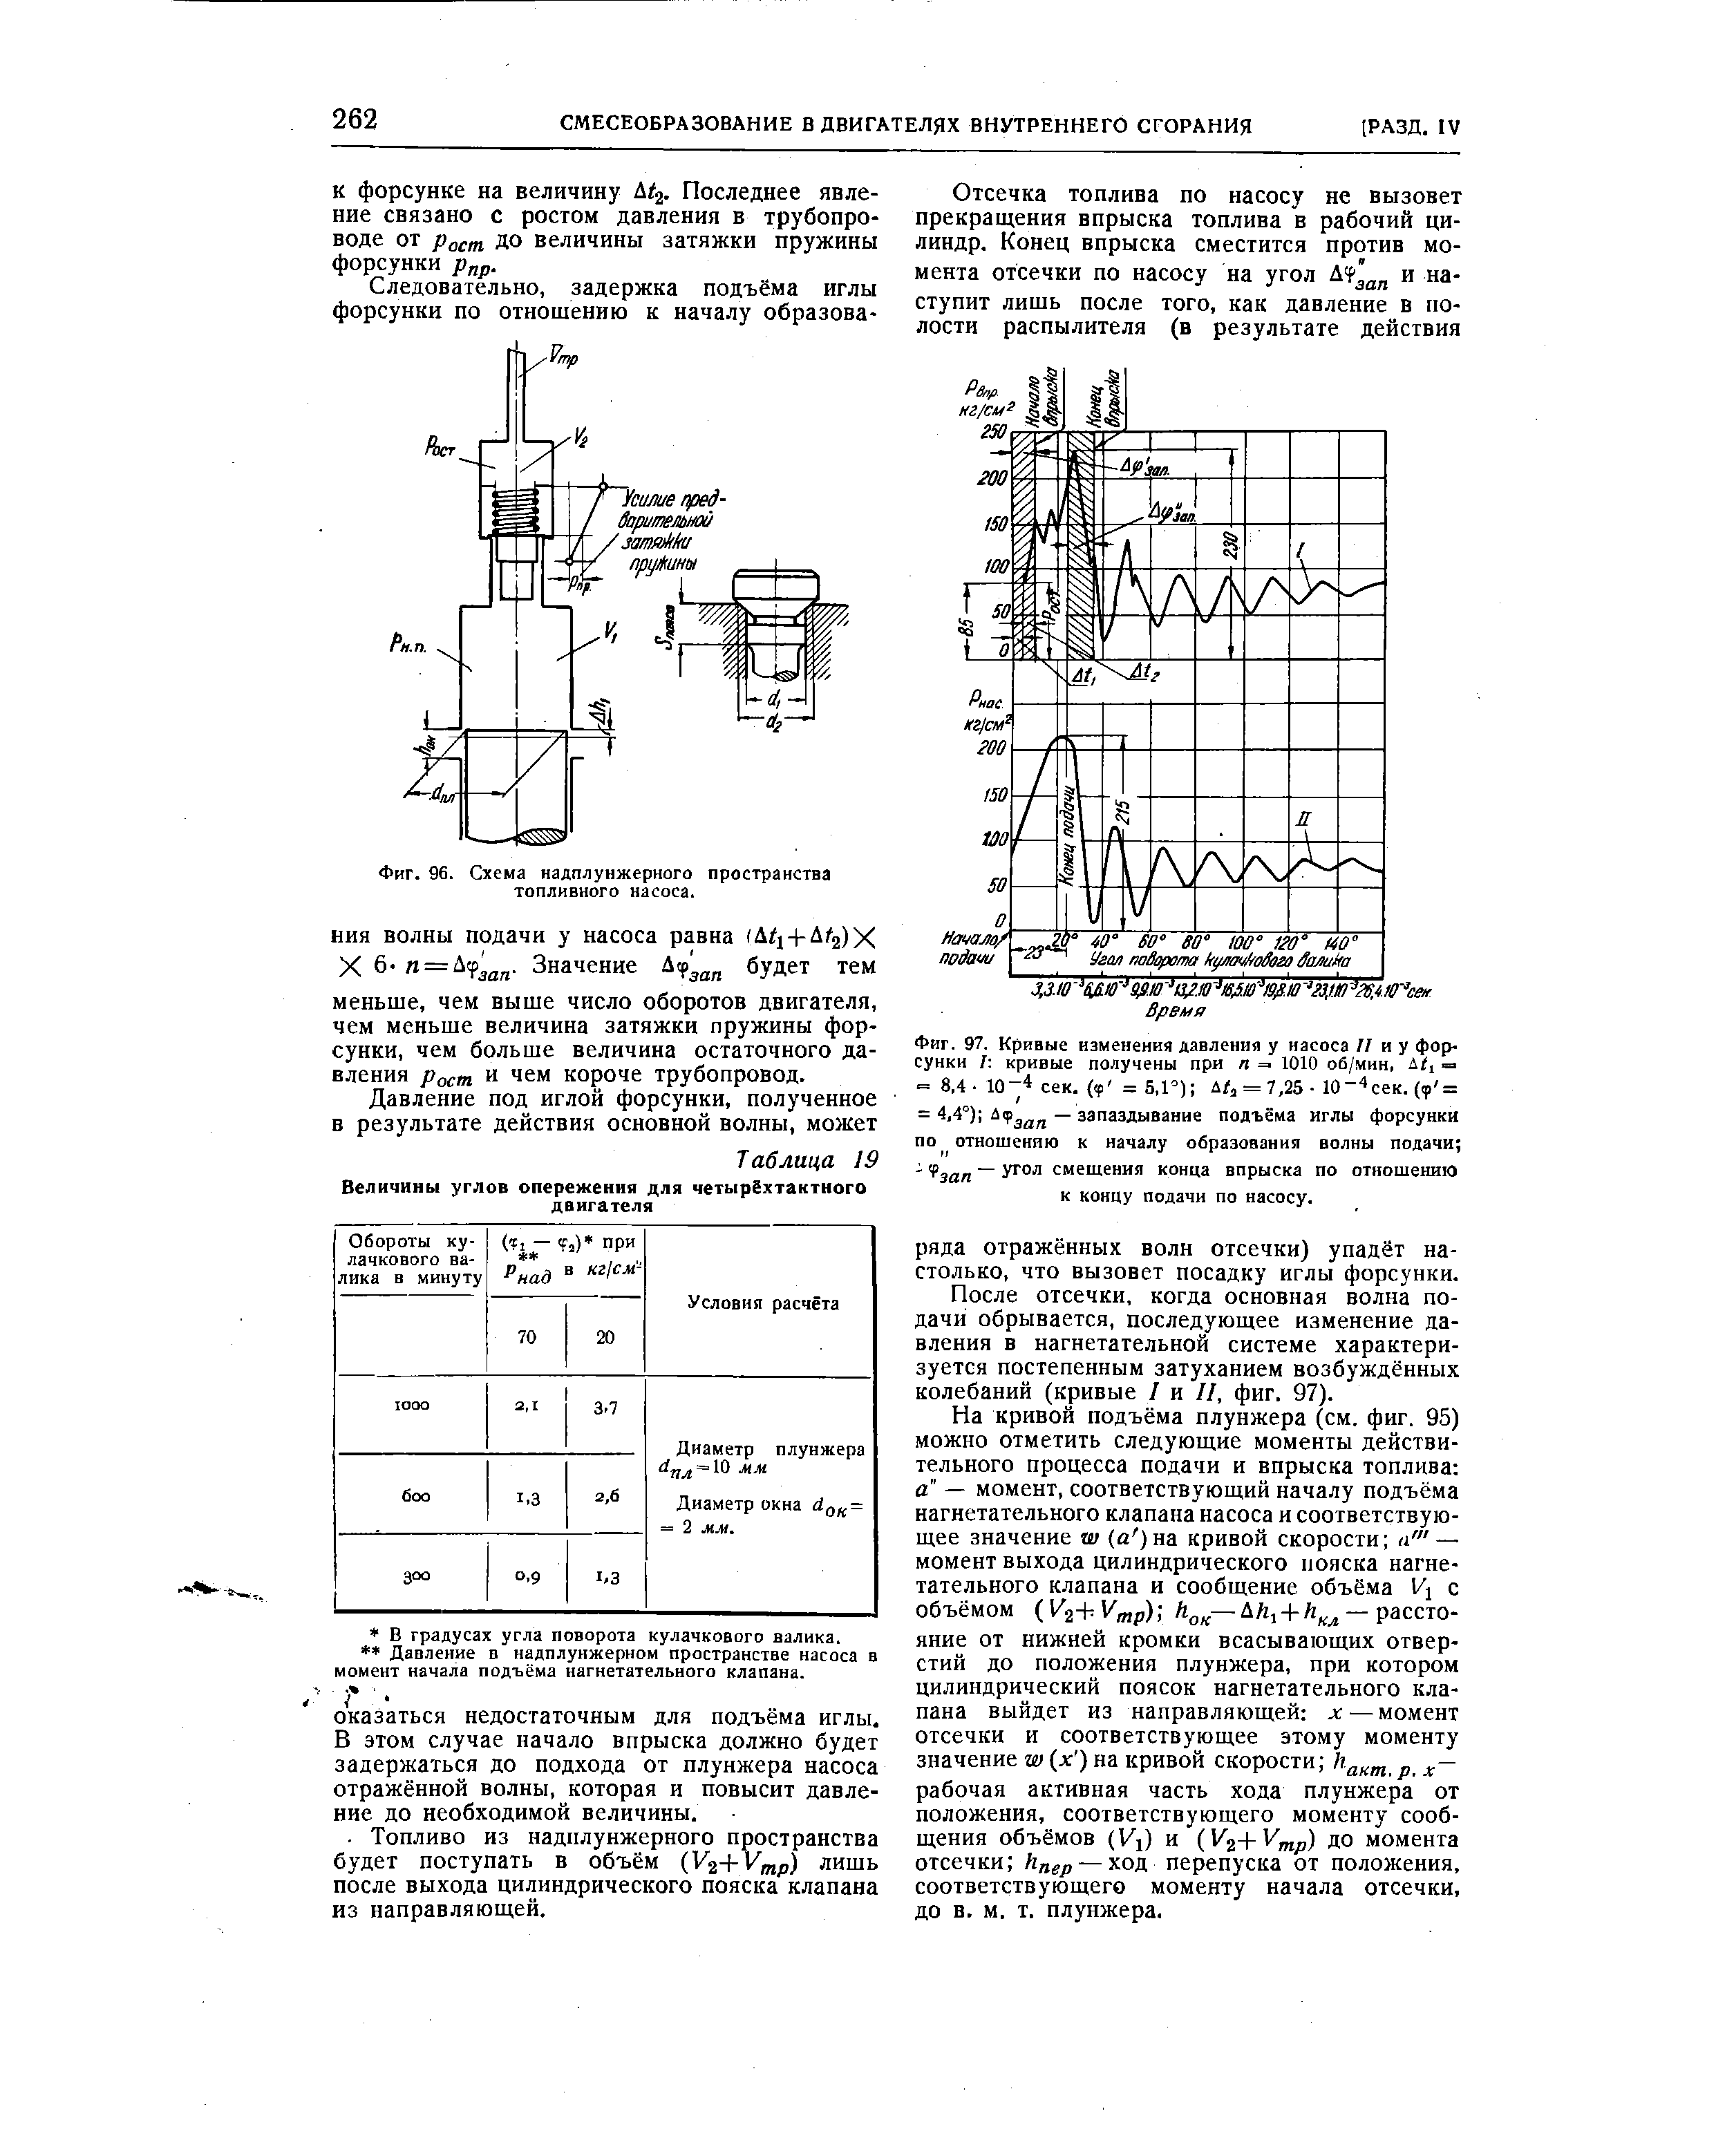 Фиг. 96. Схема надплунжерного пространства топливного насоса.
